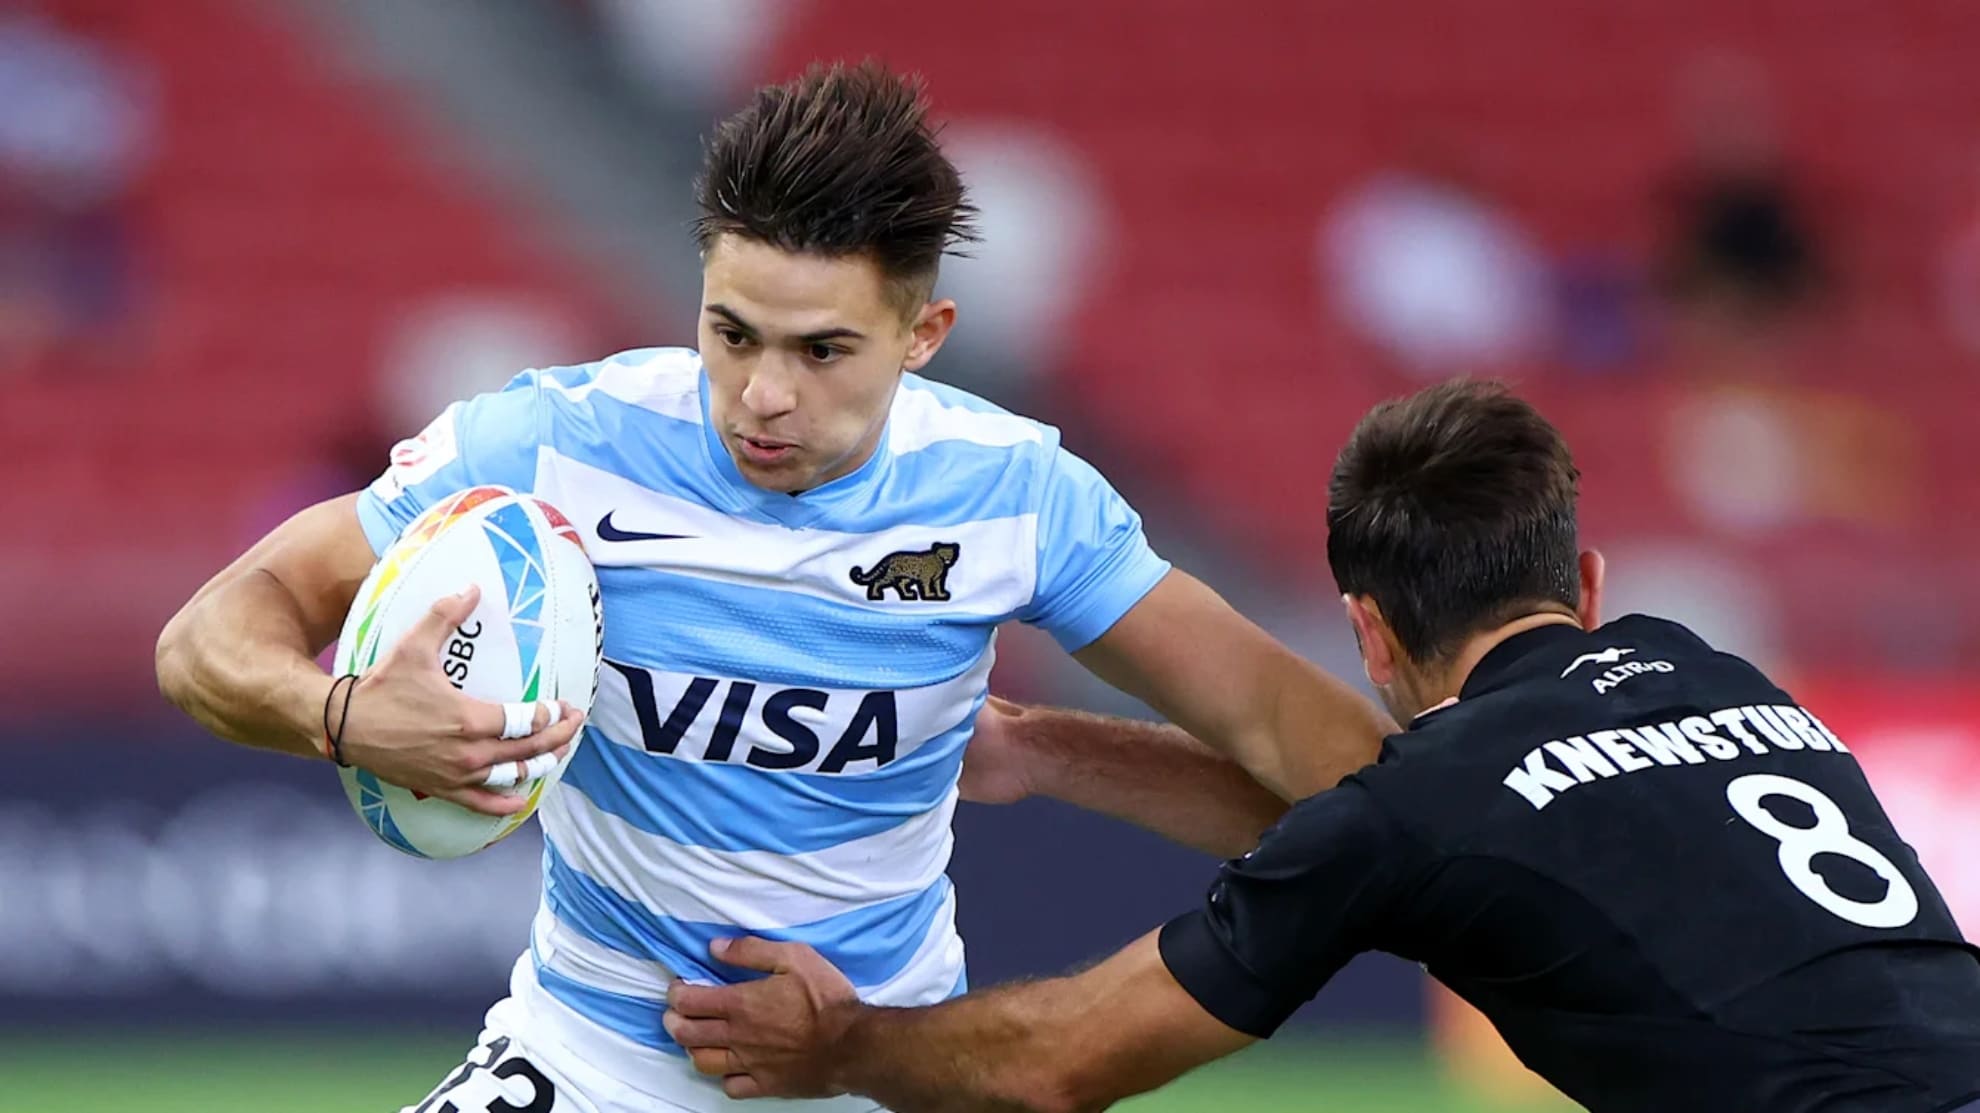 Marco Moneta, el wing argentino de rugby 7 a tener en cuenta en Santiago 2023